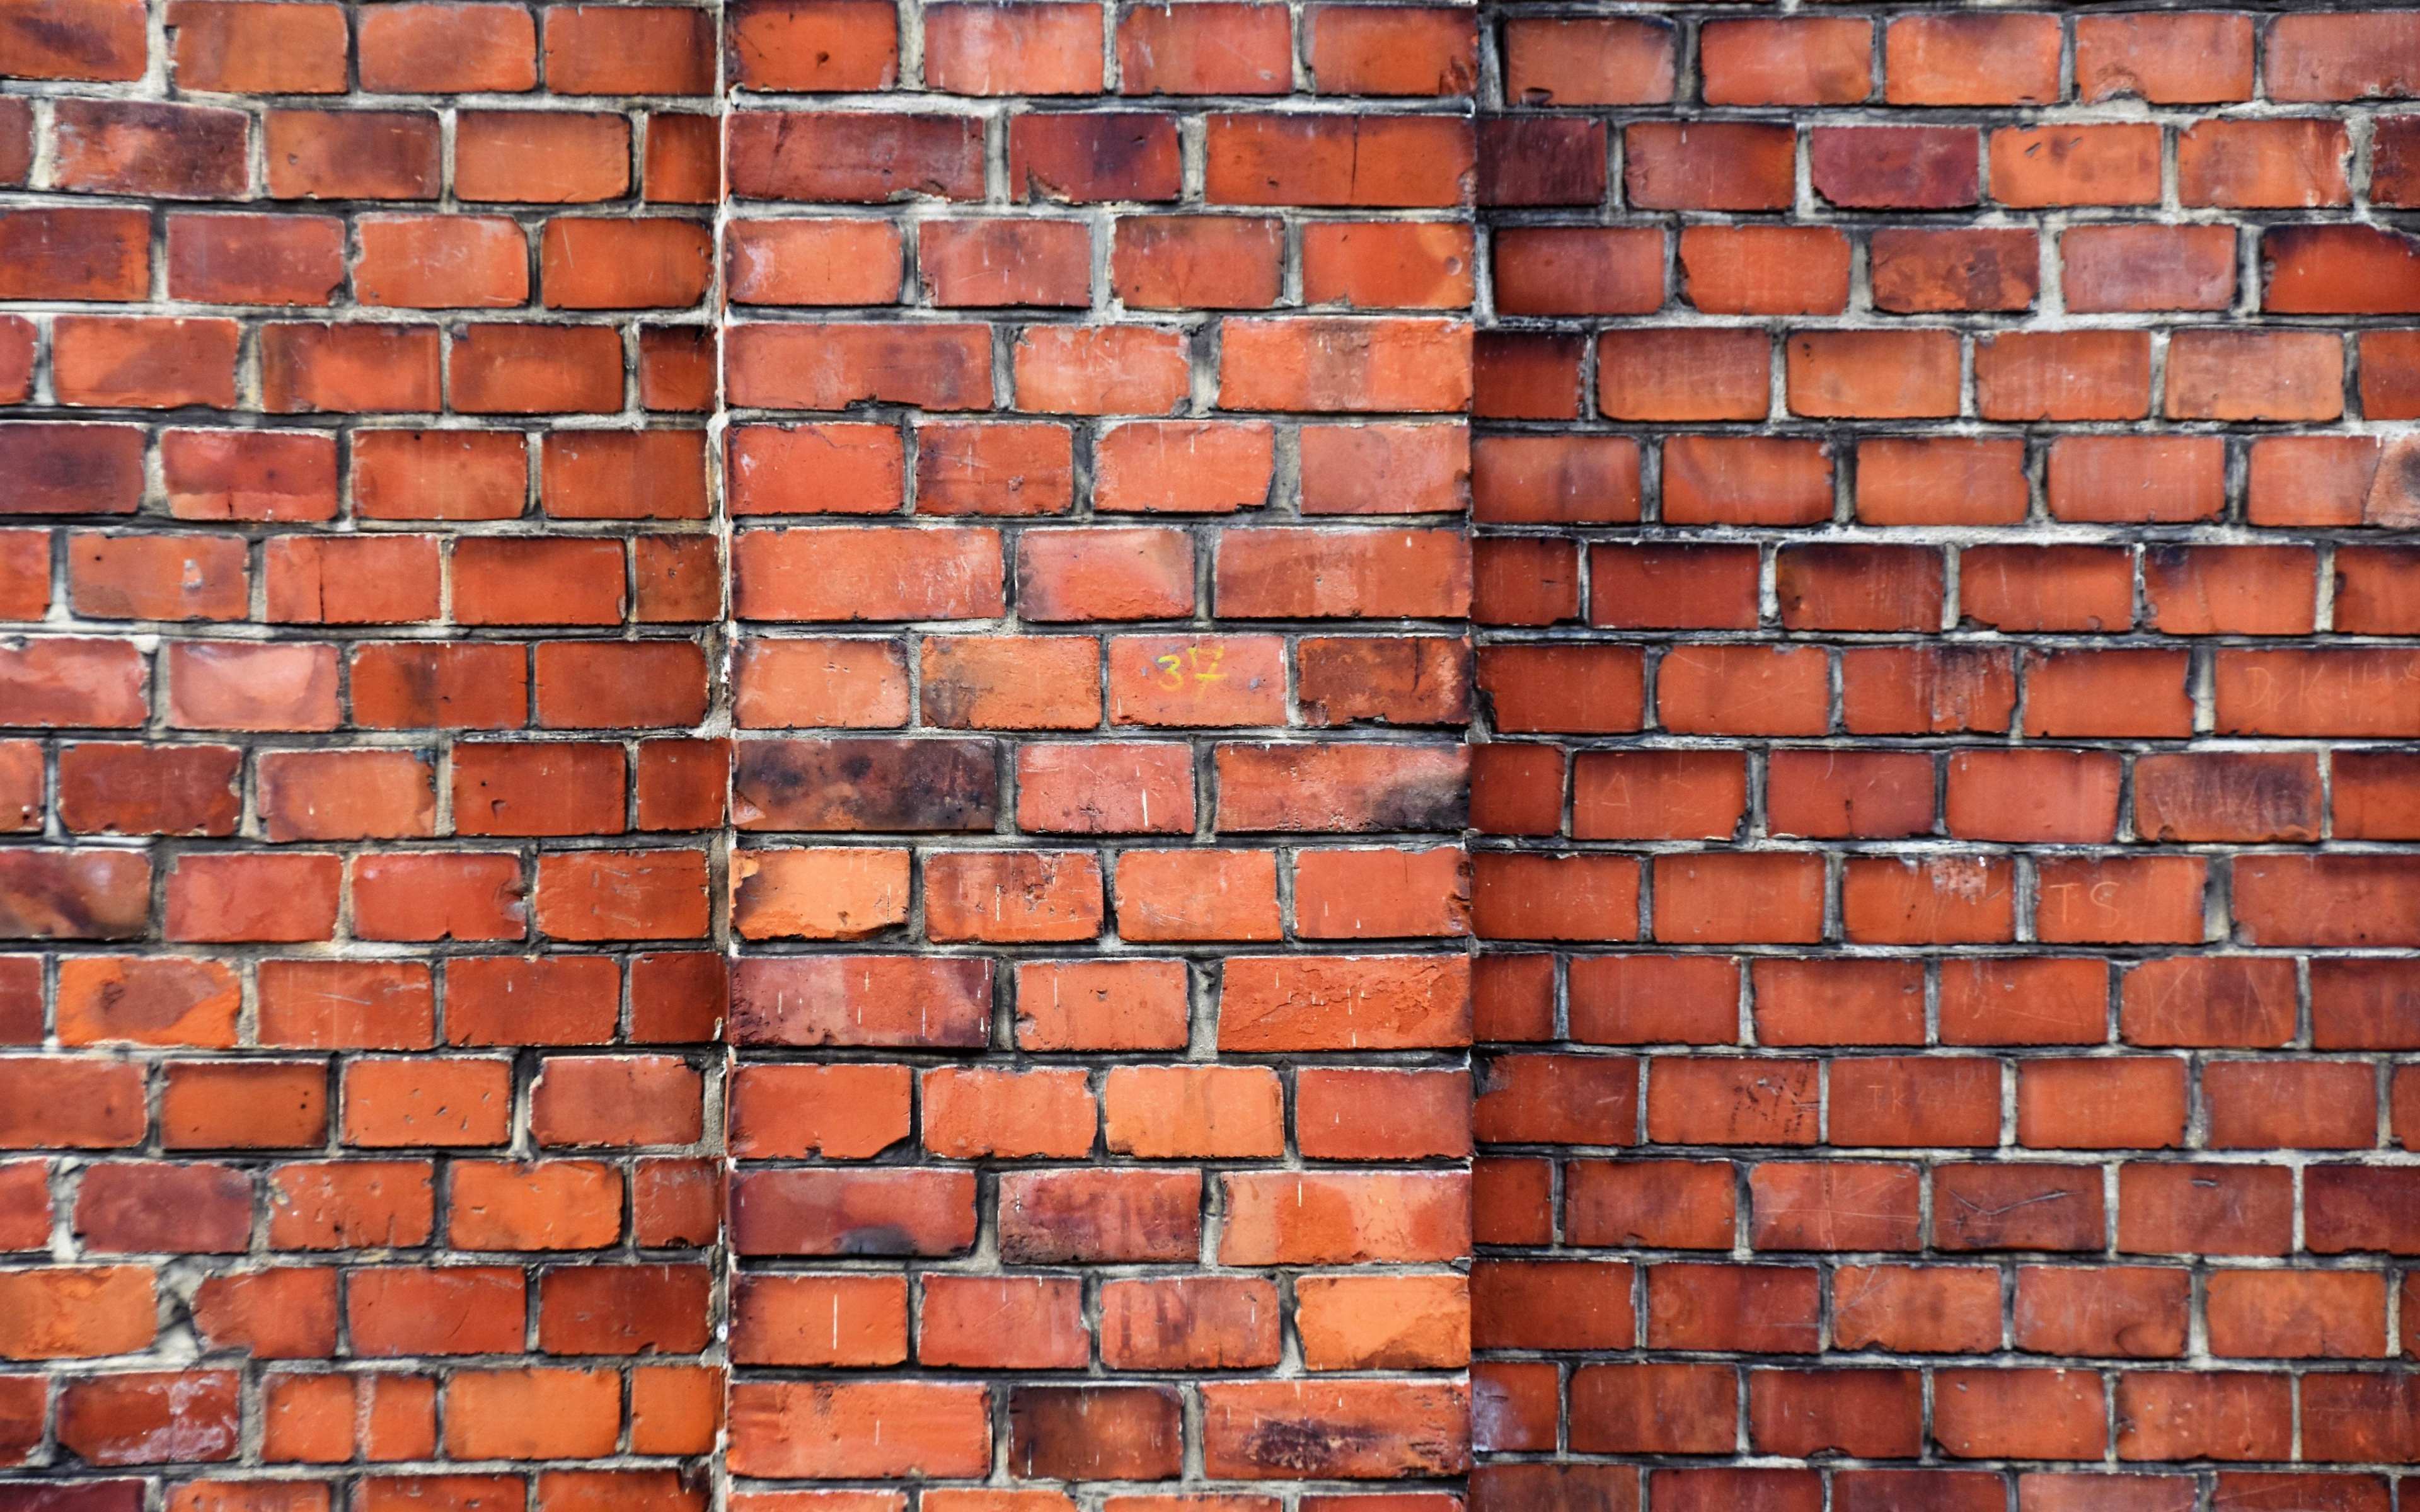 Download 3840x2400 wallpaper brick wall texture  4k 